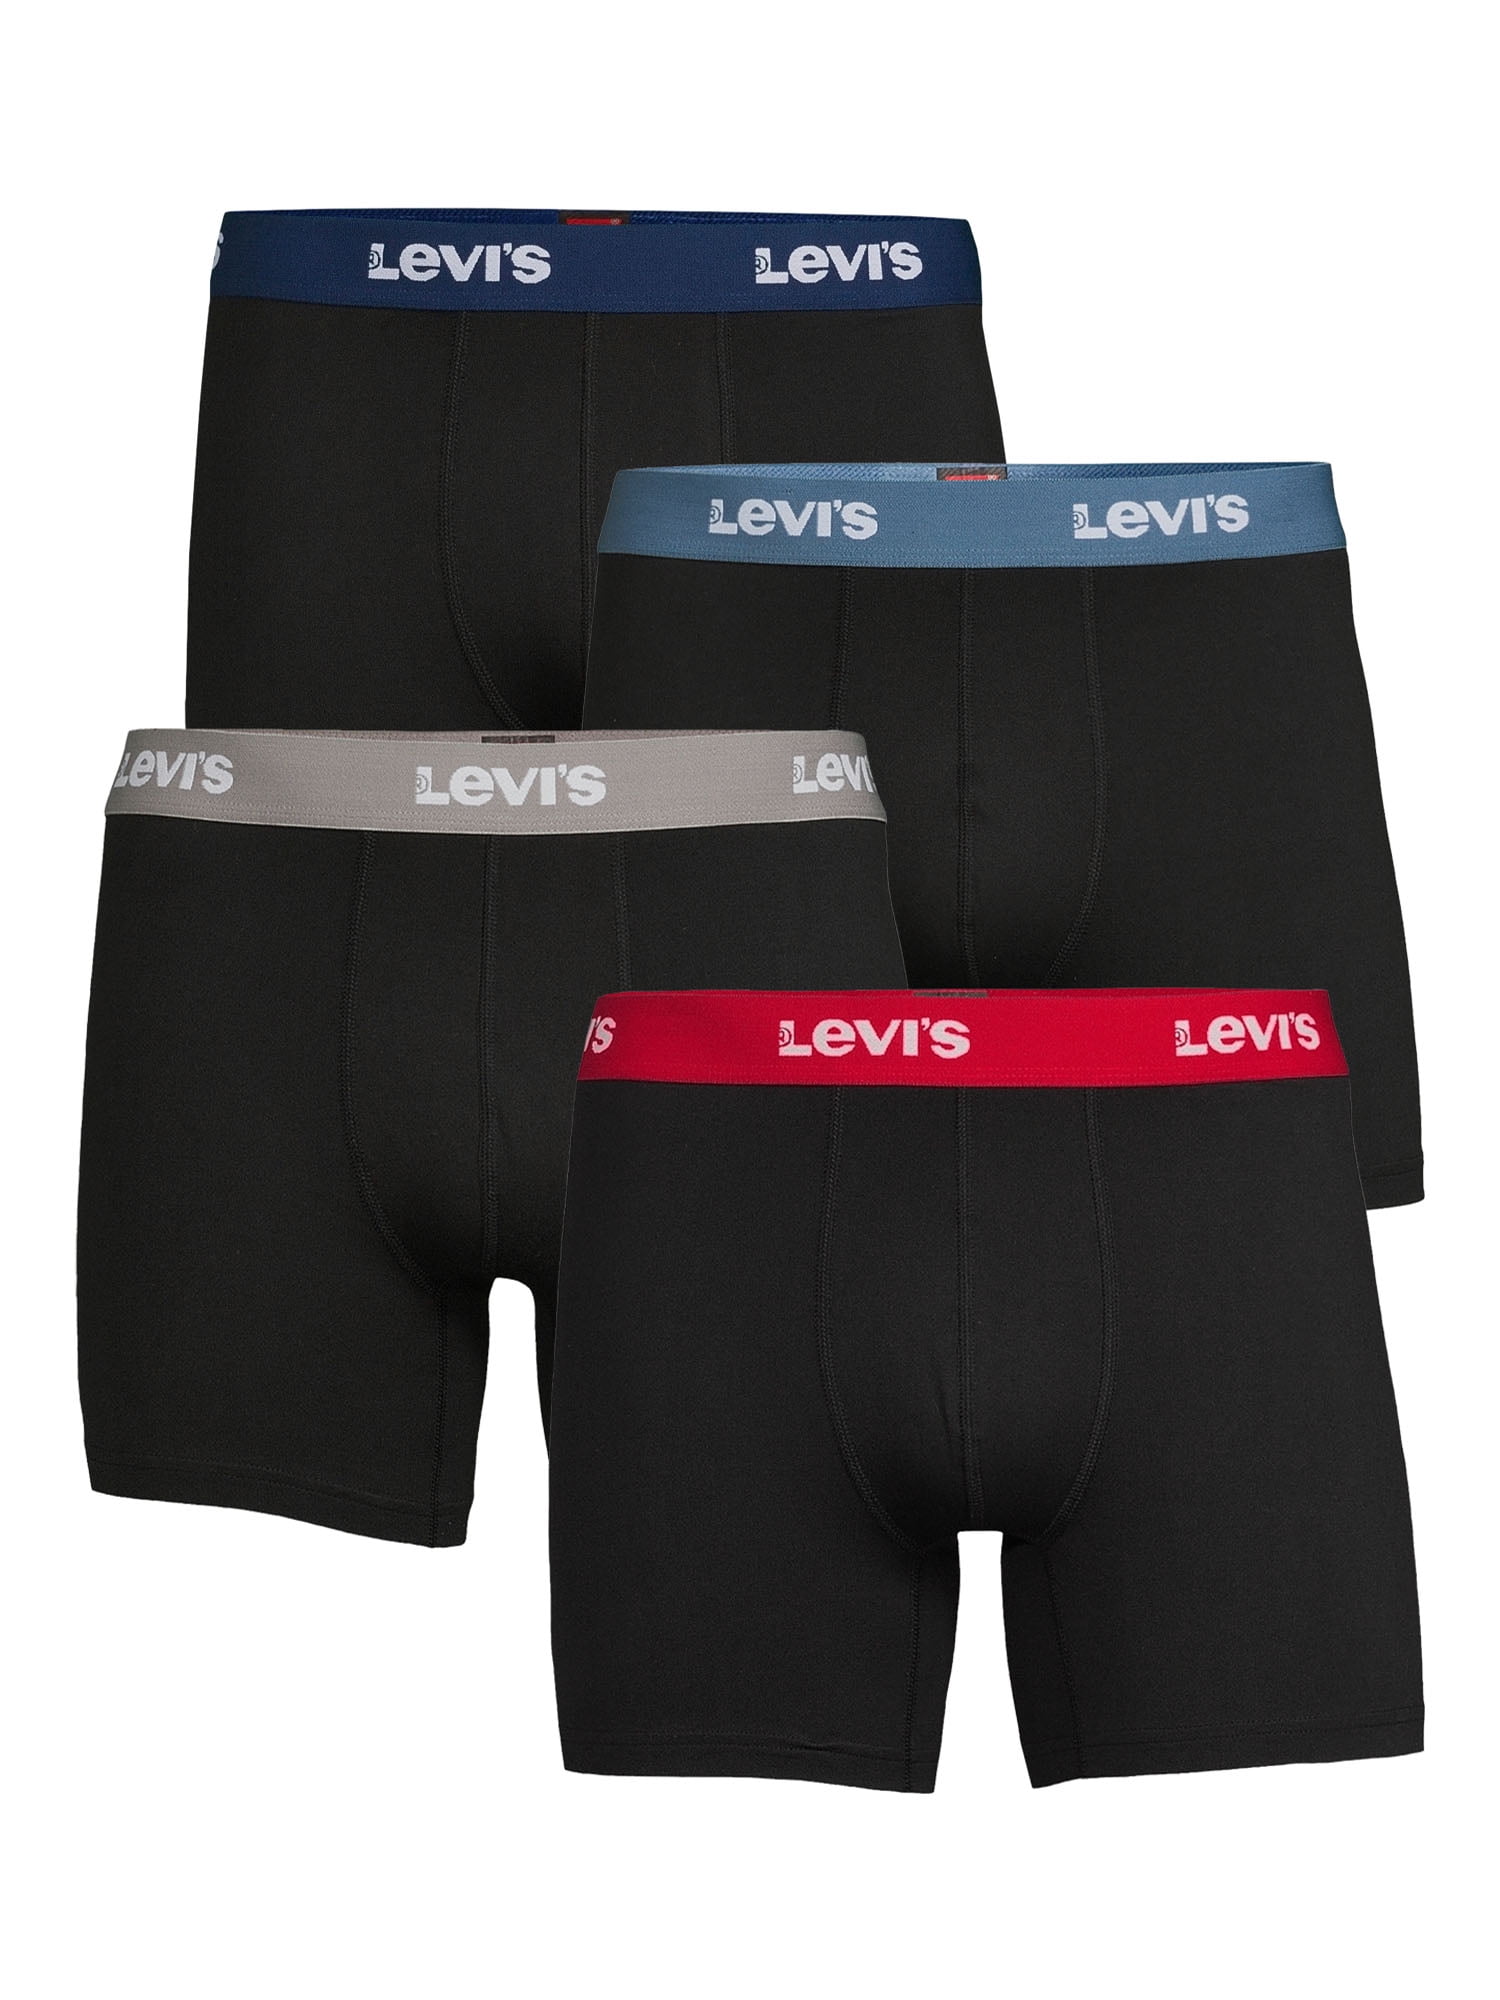 Grof Overleven toevoegen aan Levi's 4-Pack Adult Mens Microfiber Boxer Briefs, Sizes S-XL - Walmart.com